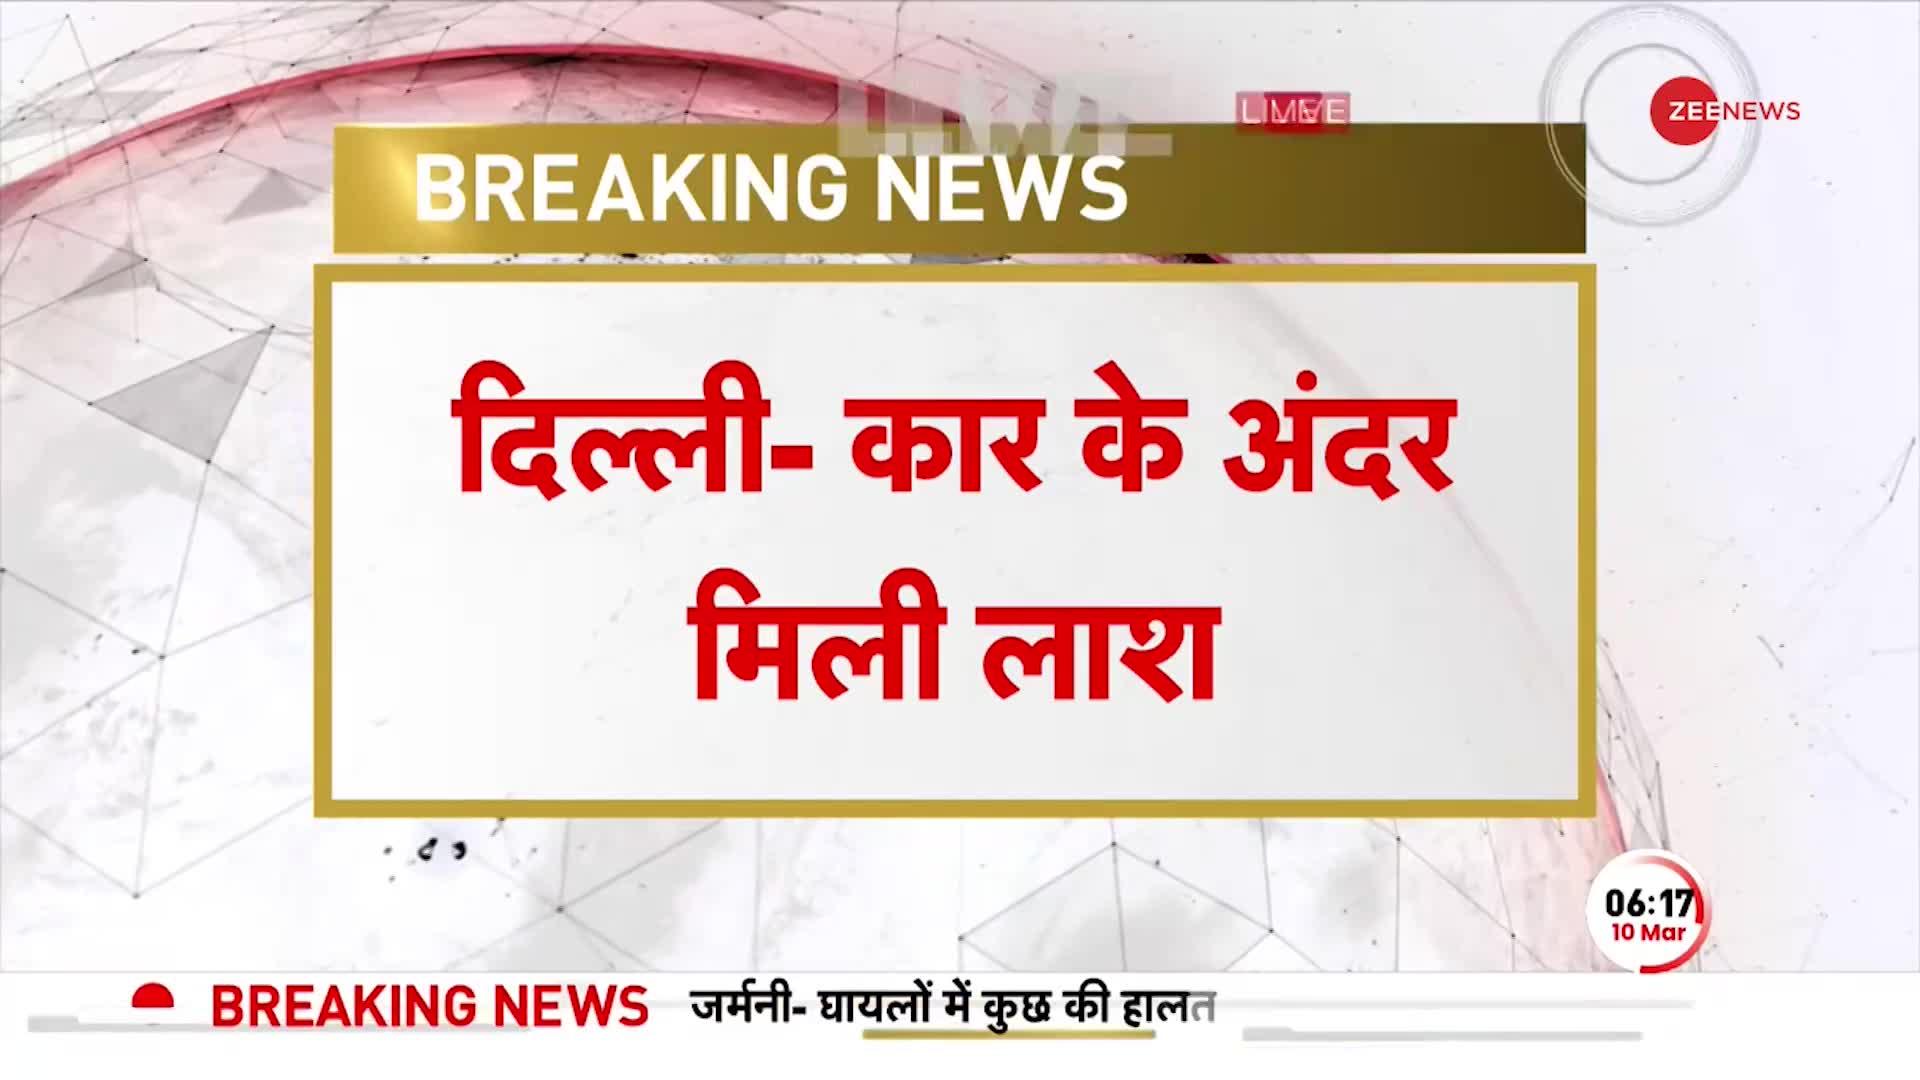 BREAKING NEWS: Delhi के New Ashok Nagar में Car के अंदर मिला शव, शरीर पर चोट के निशान नहीं